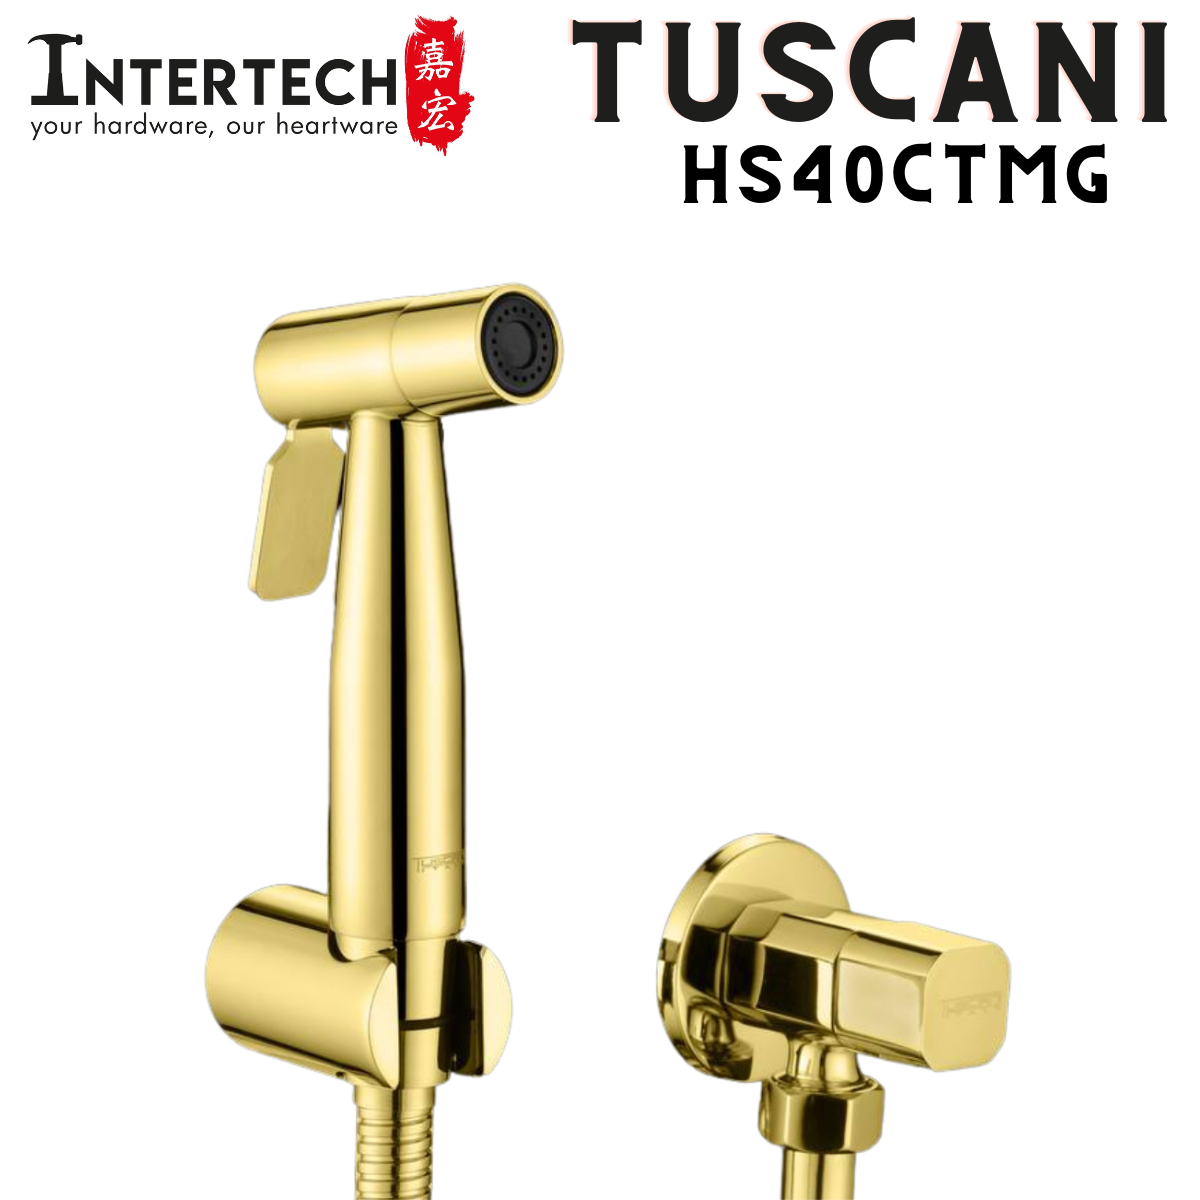 Tuscani HS40 - Steel Series - Bidet Set